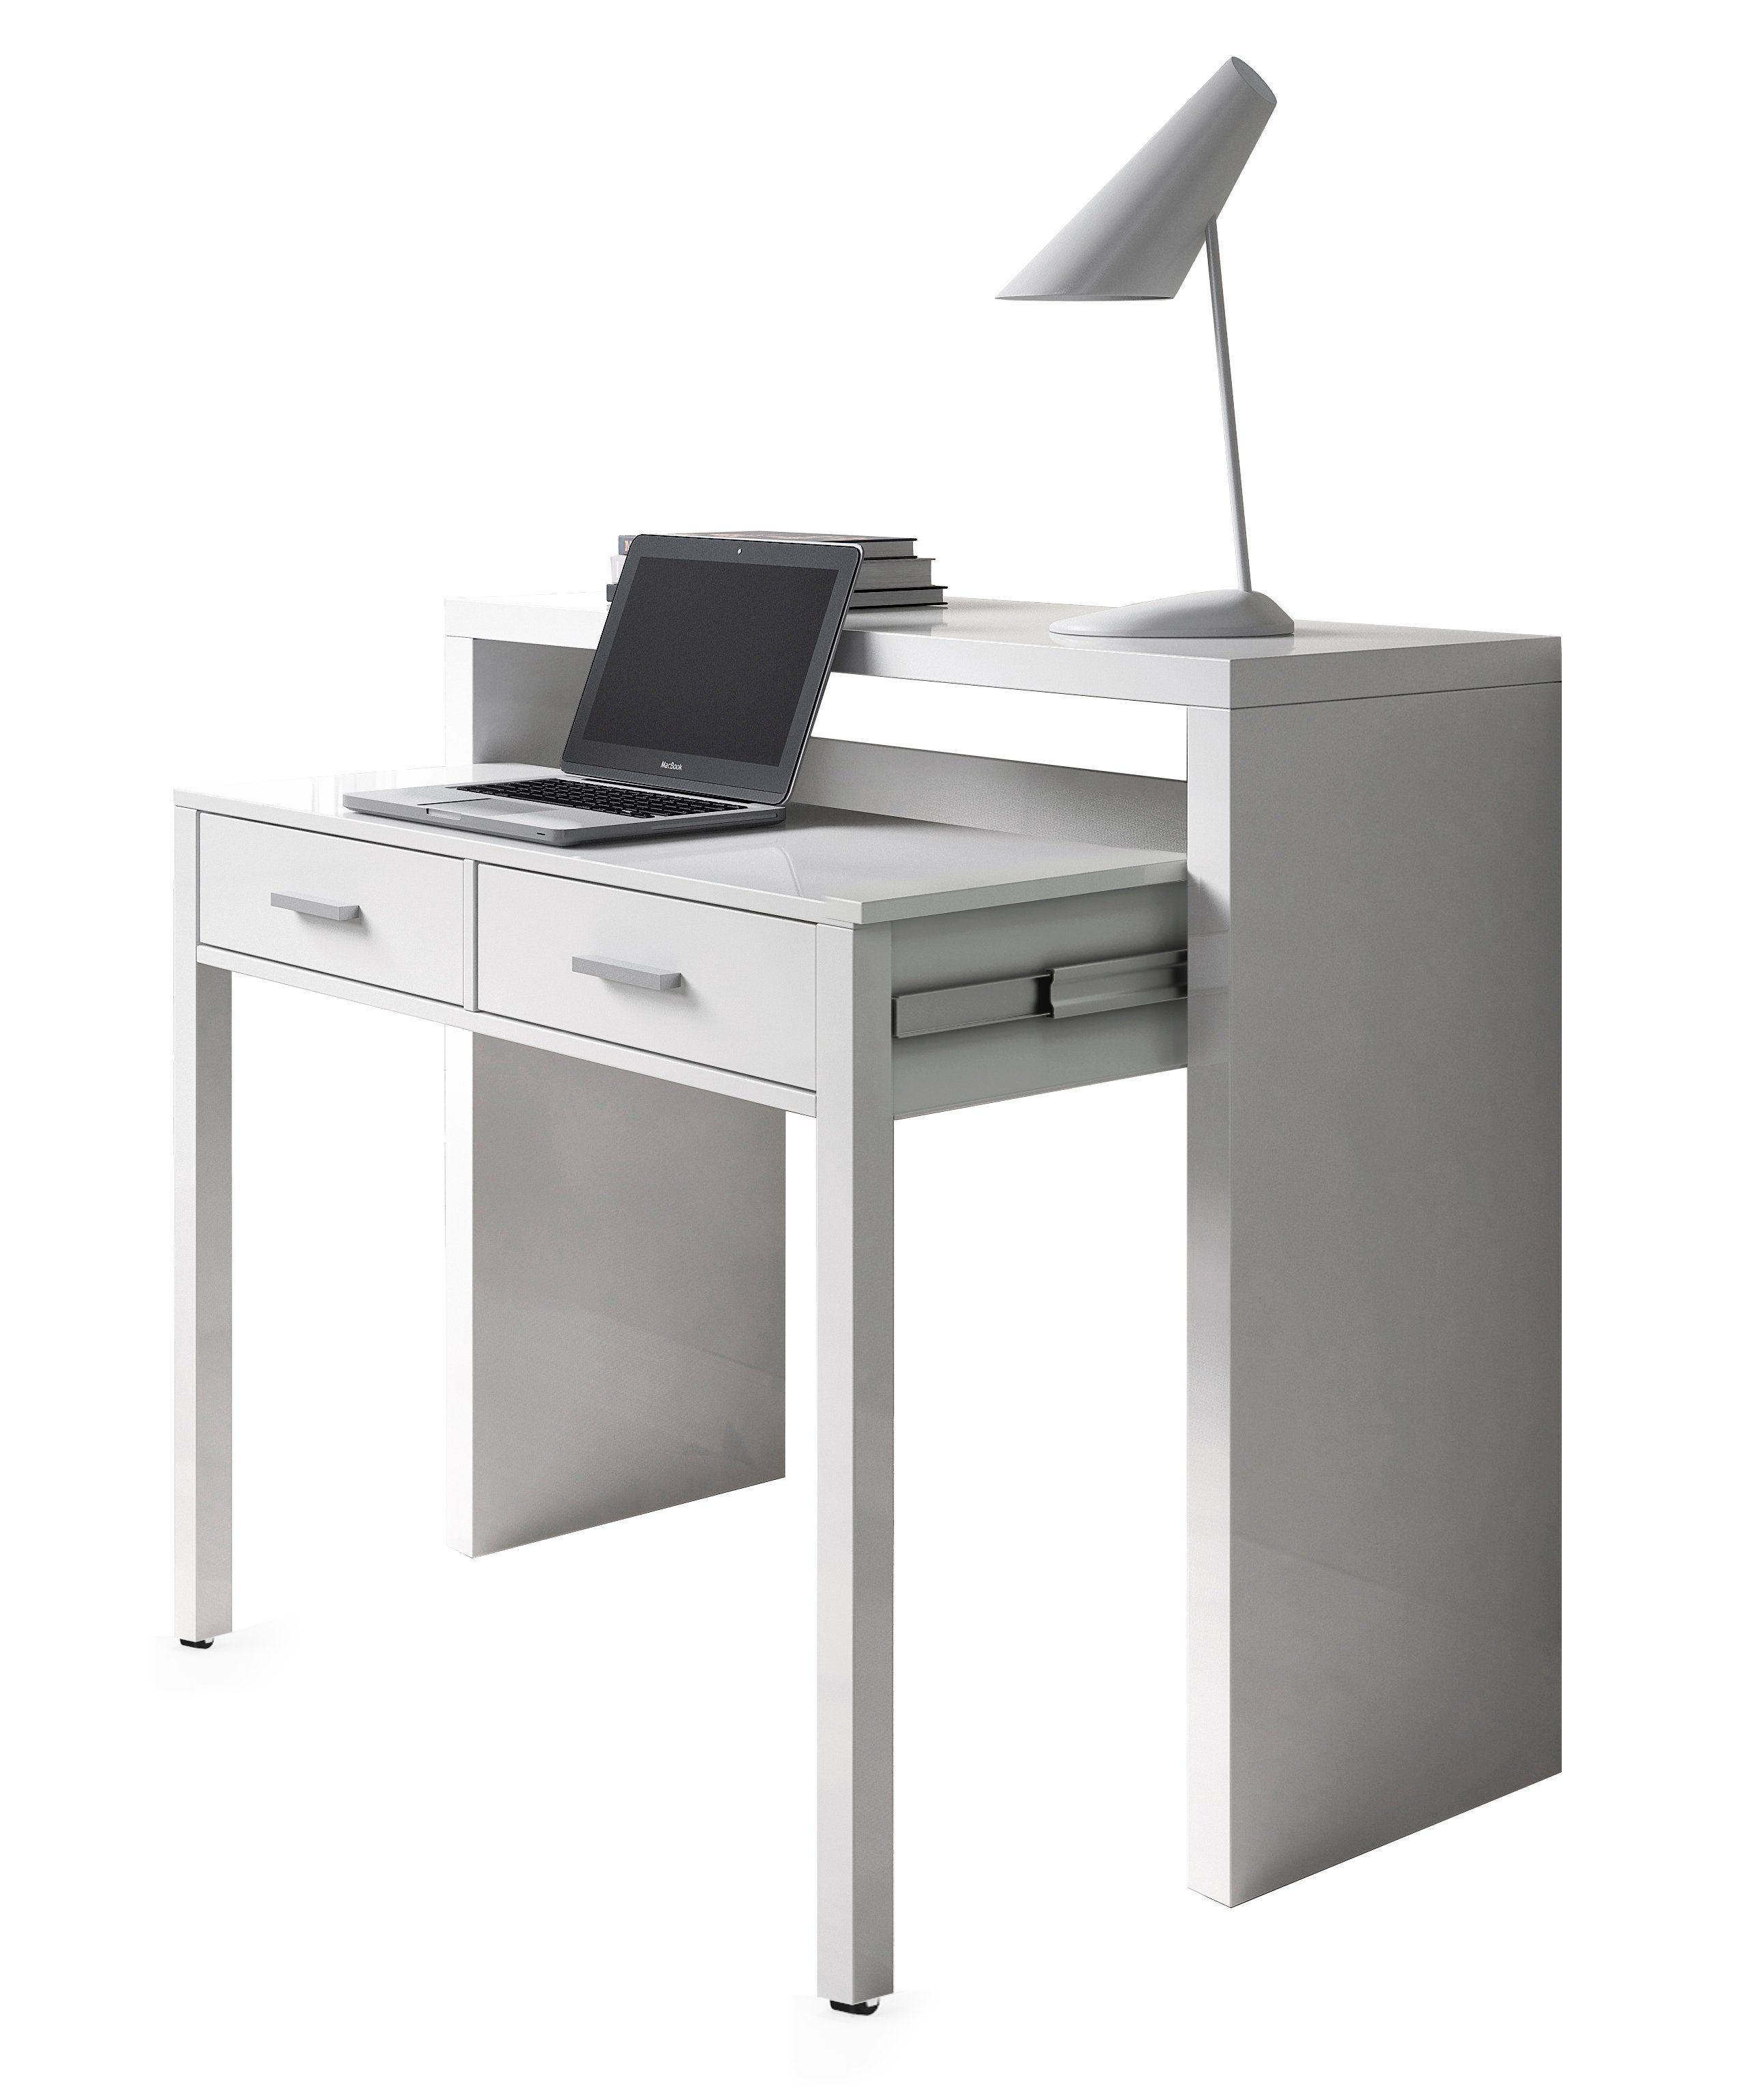 habeig Regal-Schreibtisch Schreibtisch + Kommode in einem, ausziehbar, 99x88x36/66cm, ausziehbar